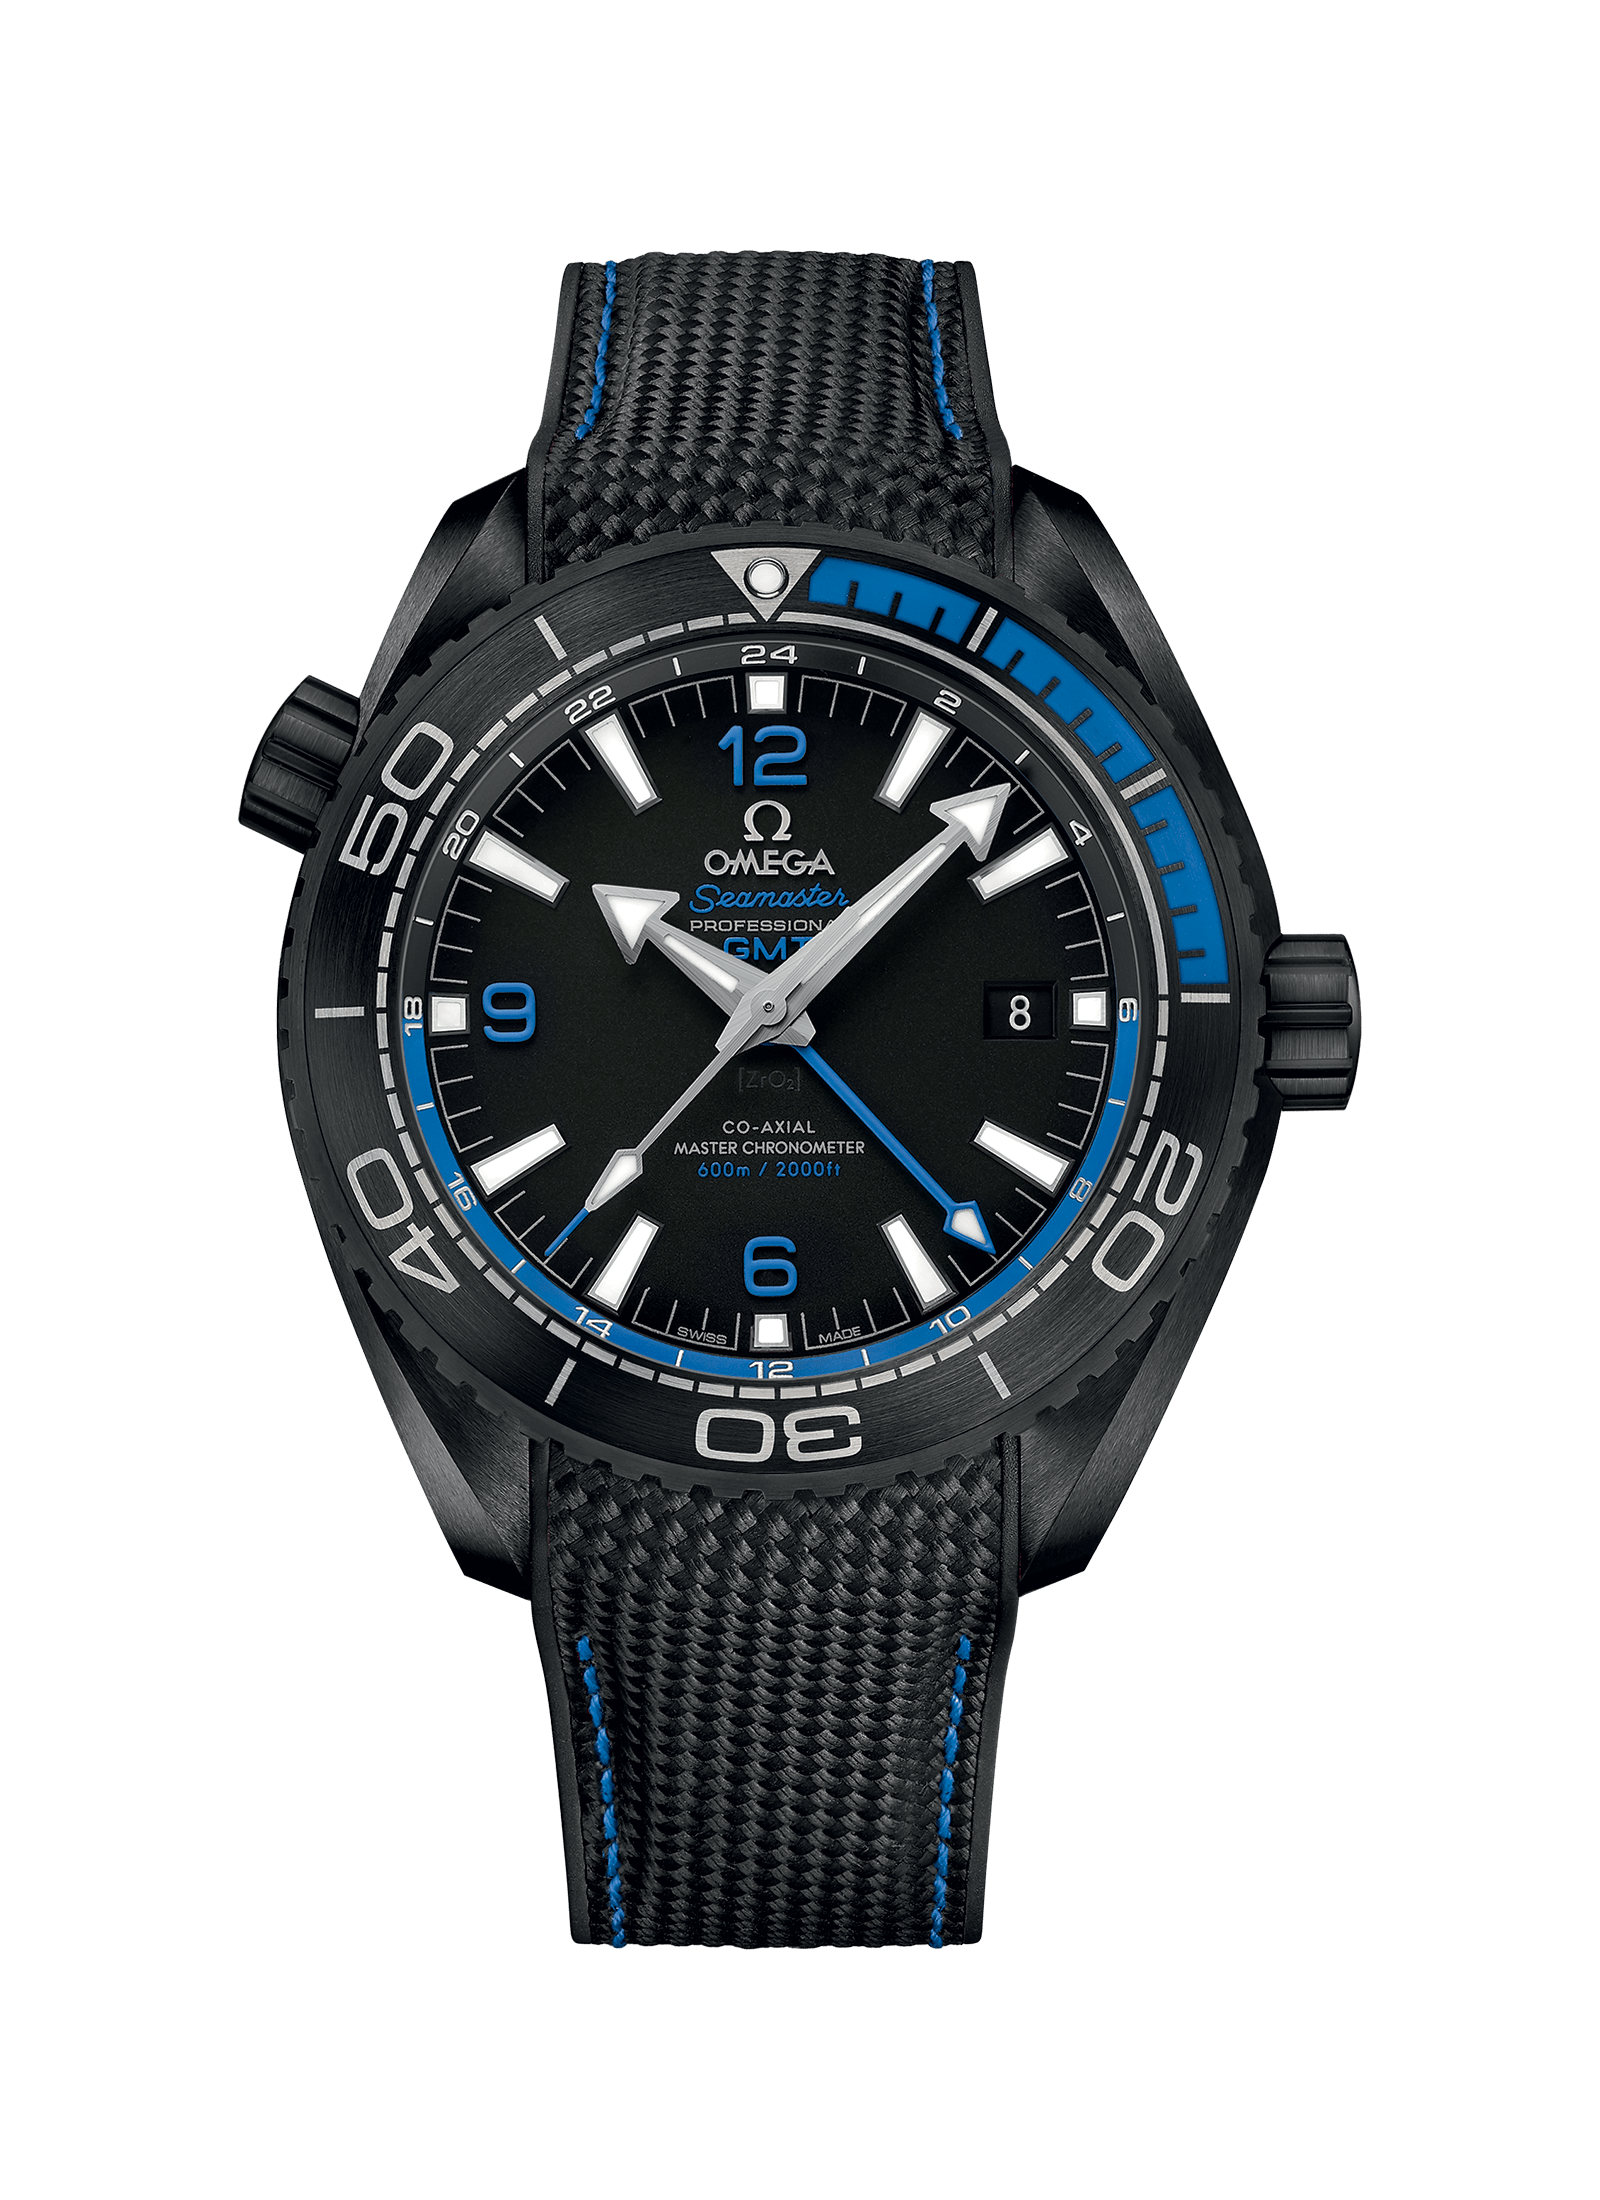 Planet Ocean Master Chronometer GMT 45.5MM Deep Black